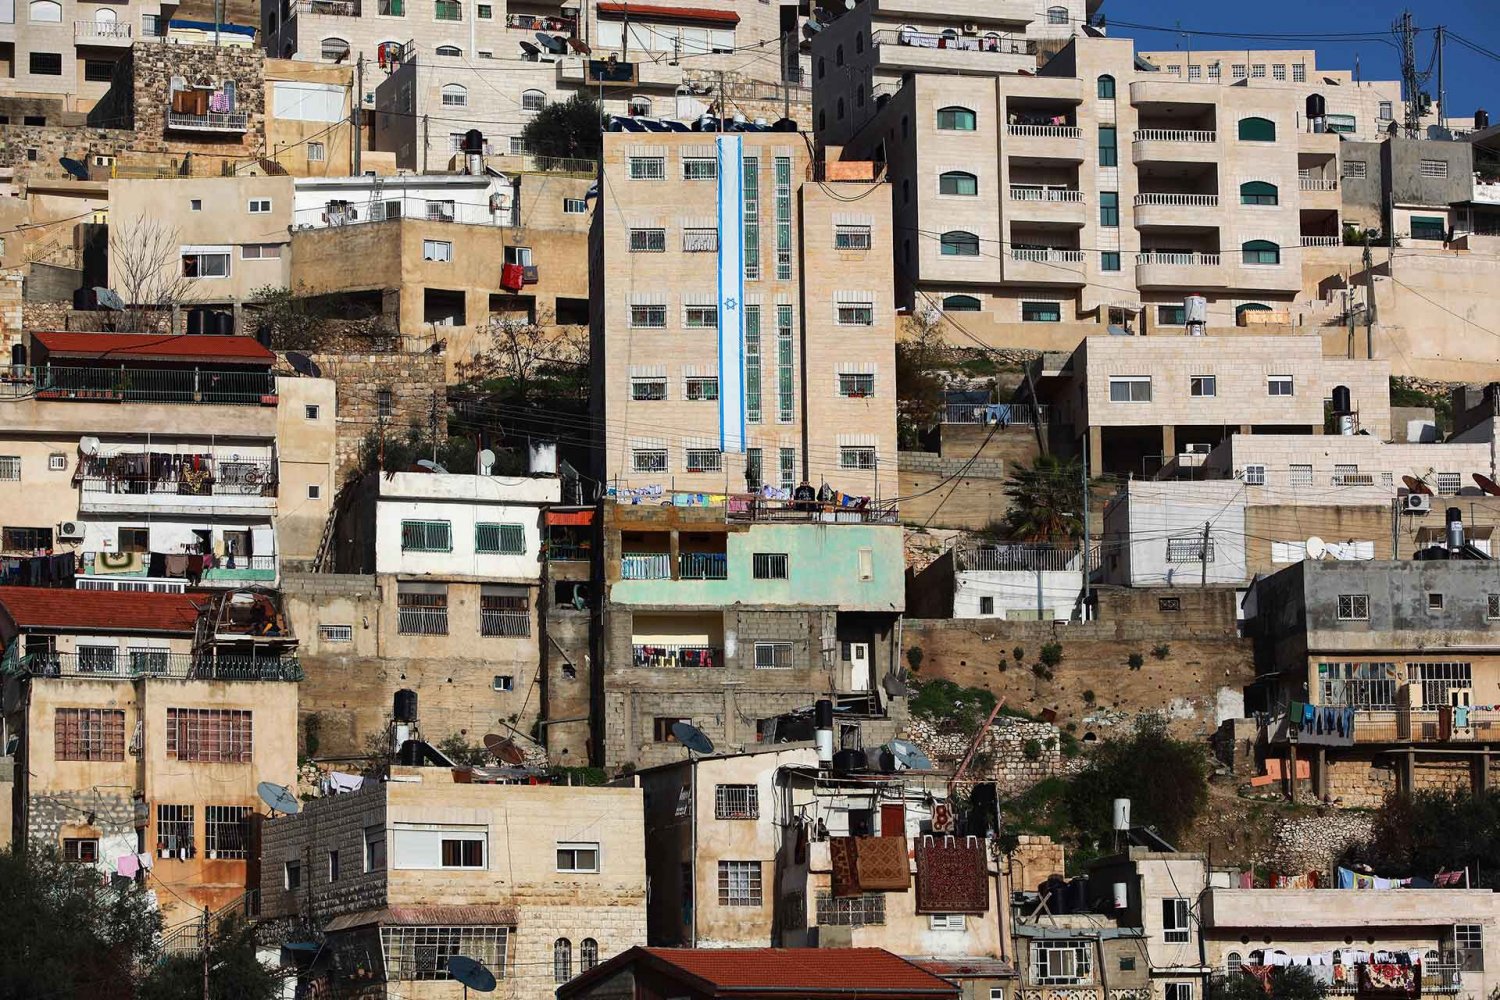 Beit Yonatan, a seven-story building in Batn al-Hawa, Silwan that was taken by settlers in 2004